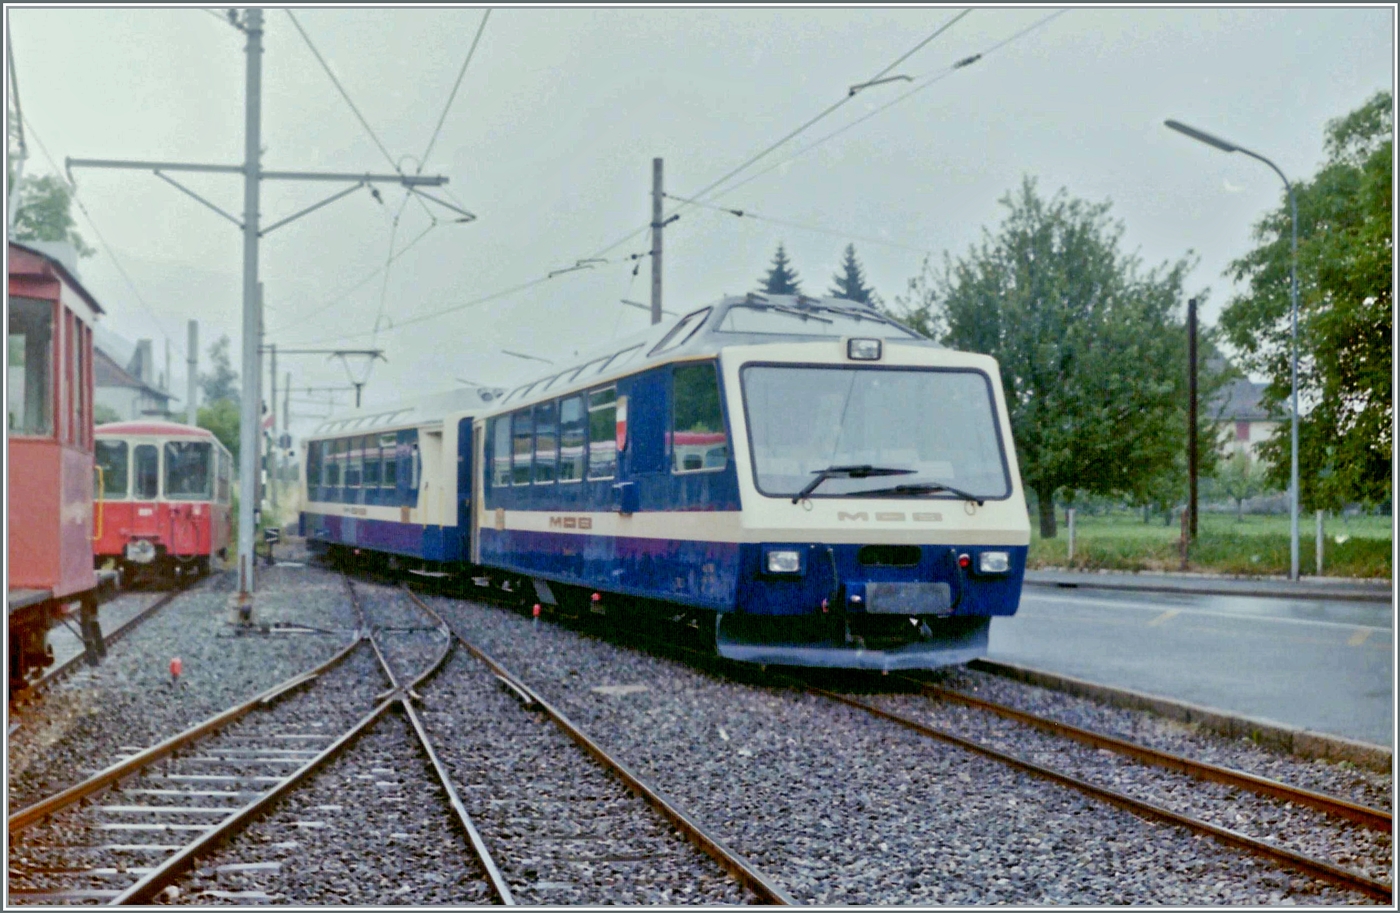 Als Testfahrt fr eine knftige Gruppenreise ab Blonay unternahm der damals  **** Superpanoramic Express  genannte Zug via Chamby nach Blonay. Das Bild zeigt die Einfahrt des Zuges in Blonay mit dem Steuerwagen Ast 116  Lausanne  an der Spitze. 

Analogbild vom Juli 1986